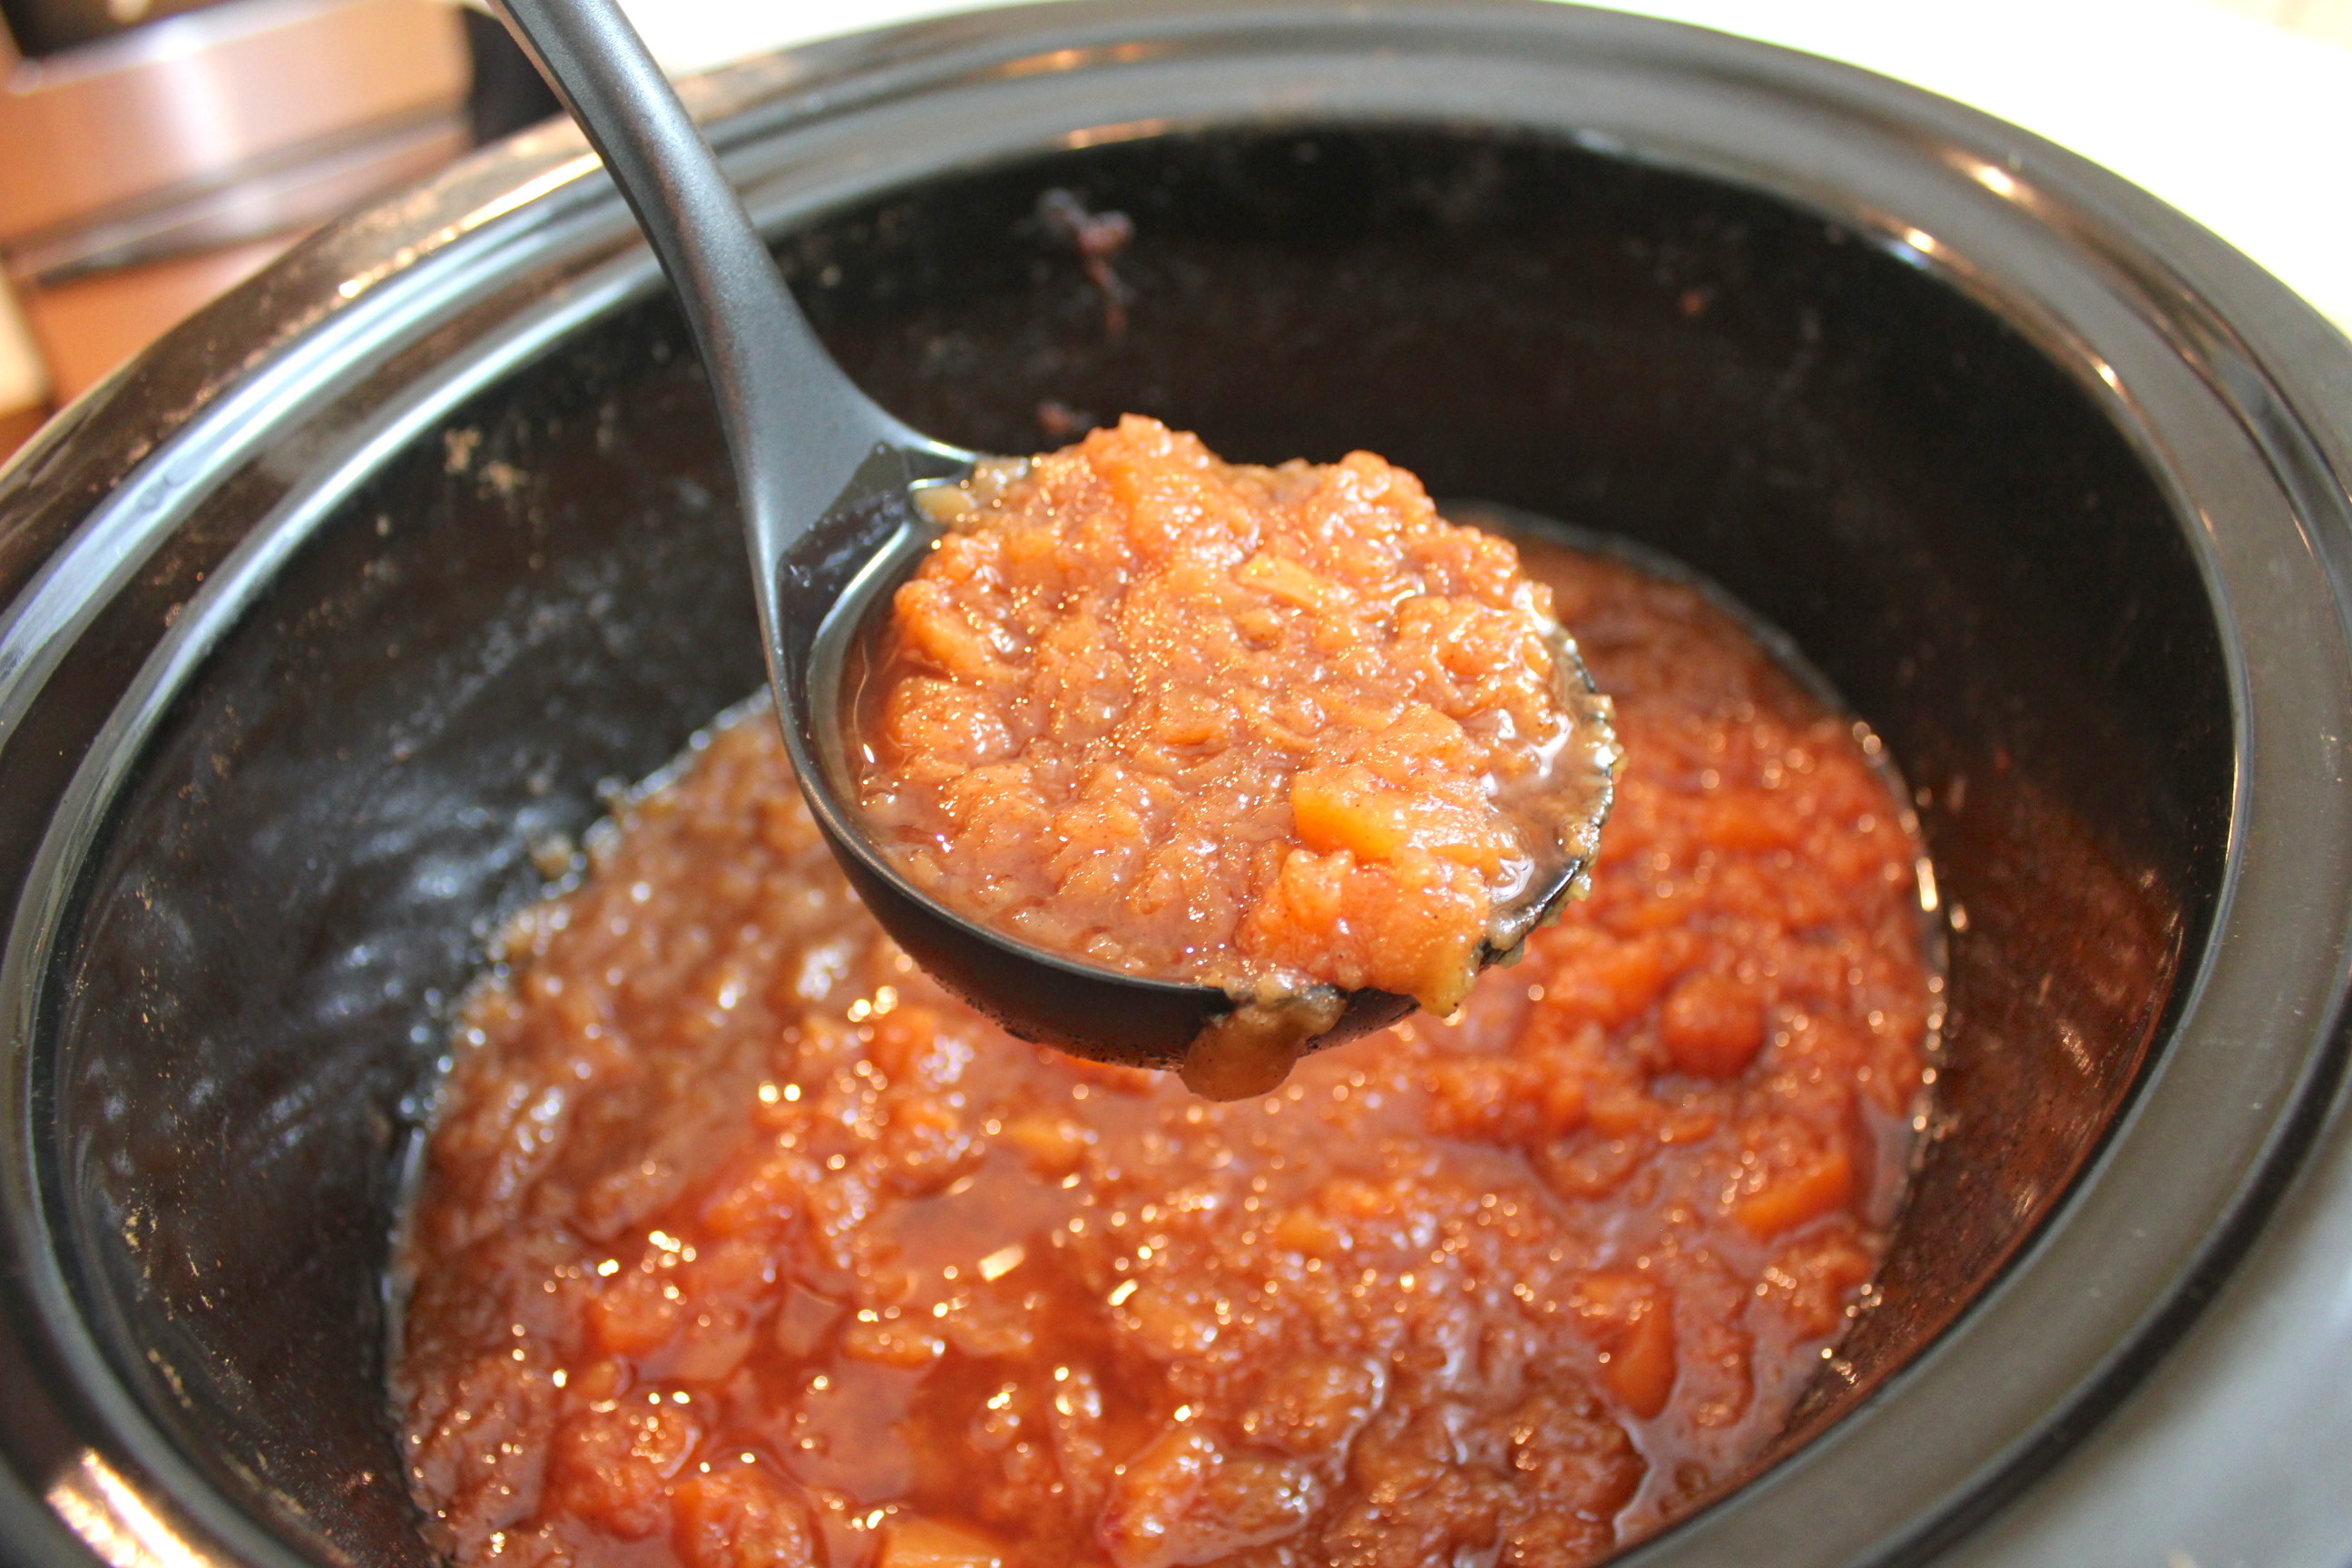 Homemade Crockpot Applesauce